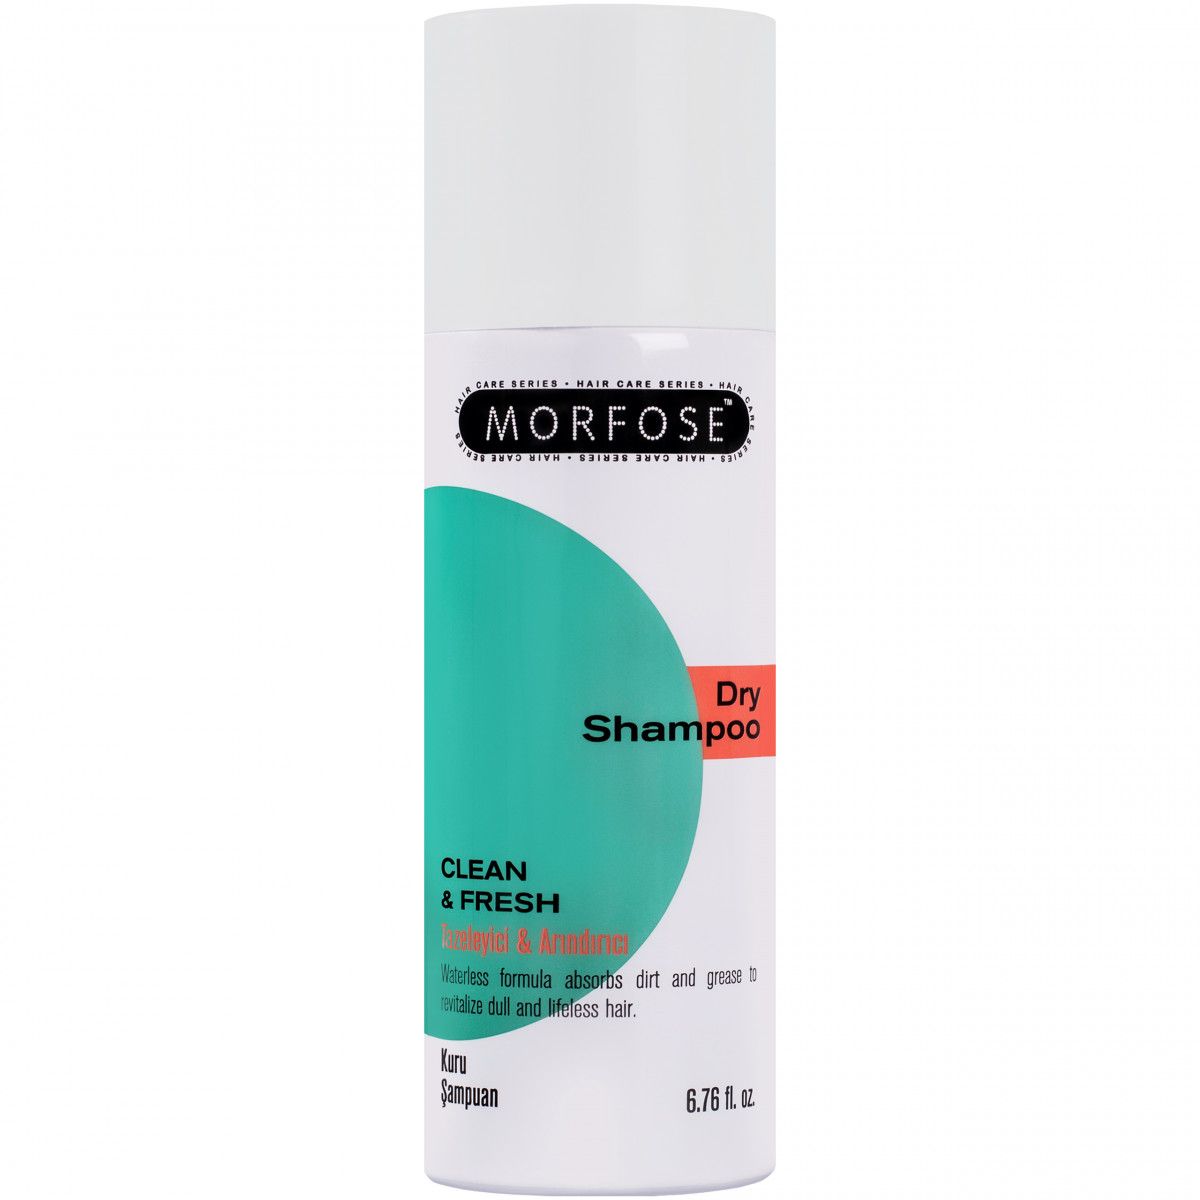 Morfose Dry Shampoo Clean & Fresh - suchy szampon do włosów, odświeża i oczyszcza, 200ml